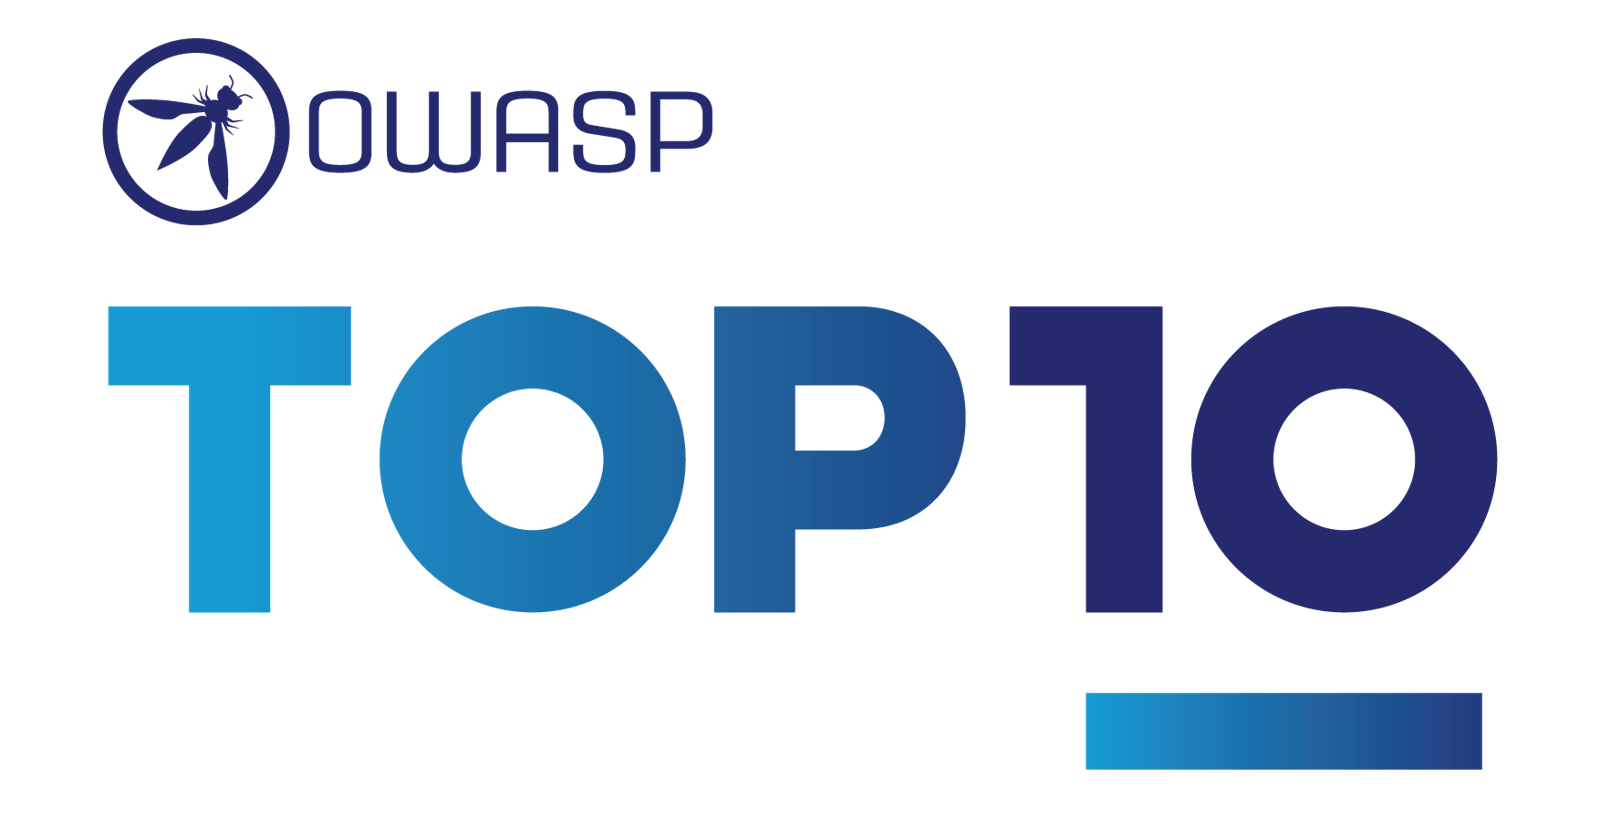 OWASP Vulnerabilities - Top 10 Rules